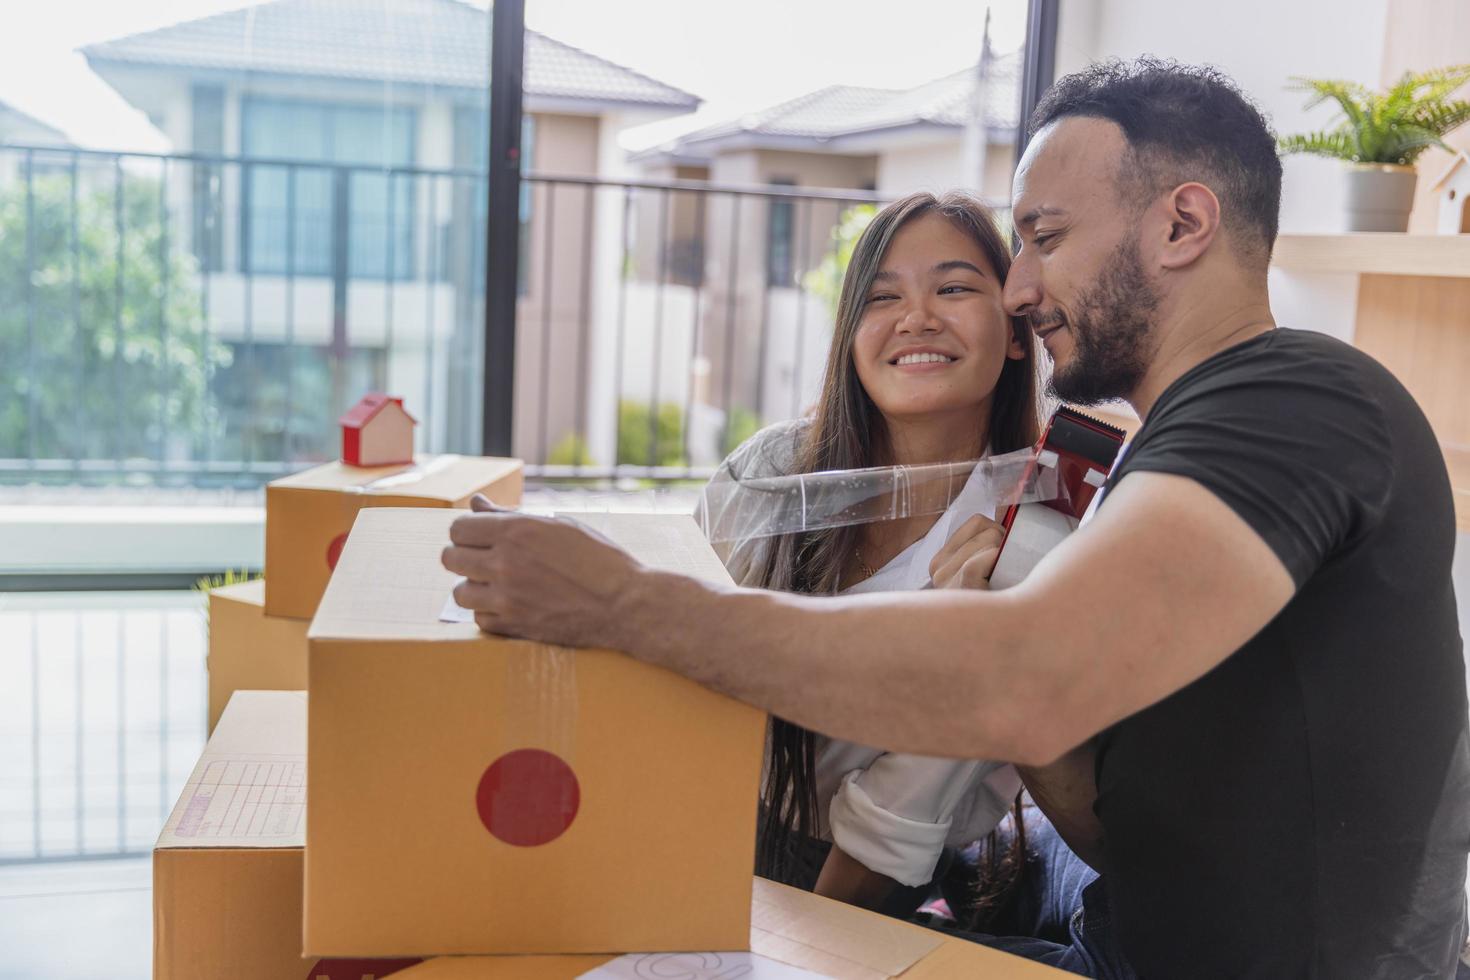 el concepto de mudanza. primer plano de una pareja empacando cajas de cartón para mudarse a un nuevo hogar. foto